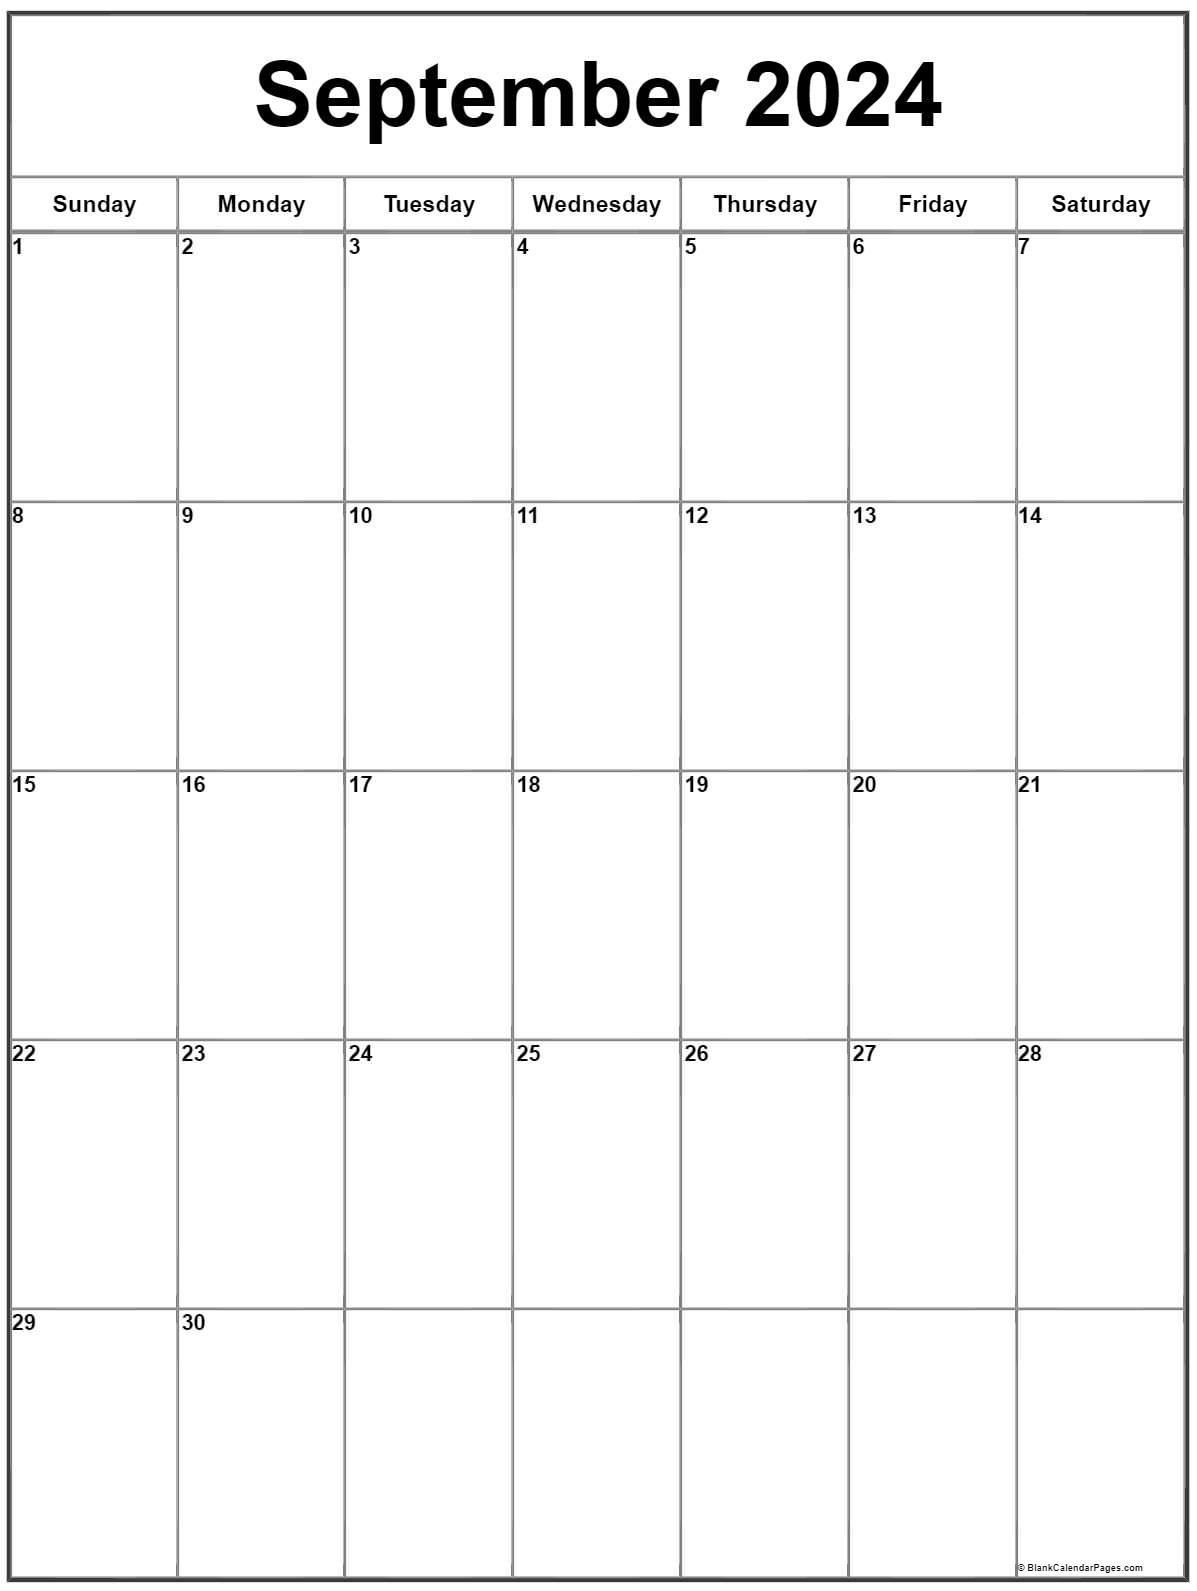 September 2022 Calendar Template September 2022 Vertical Calendar | Portrait